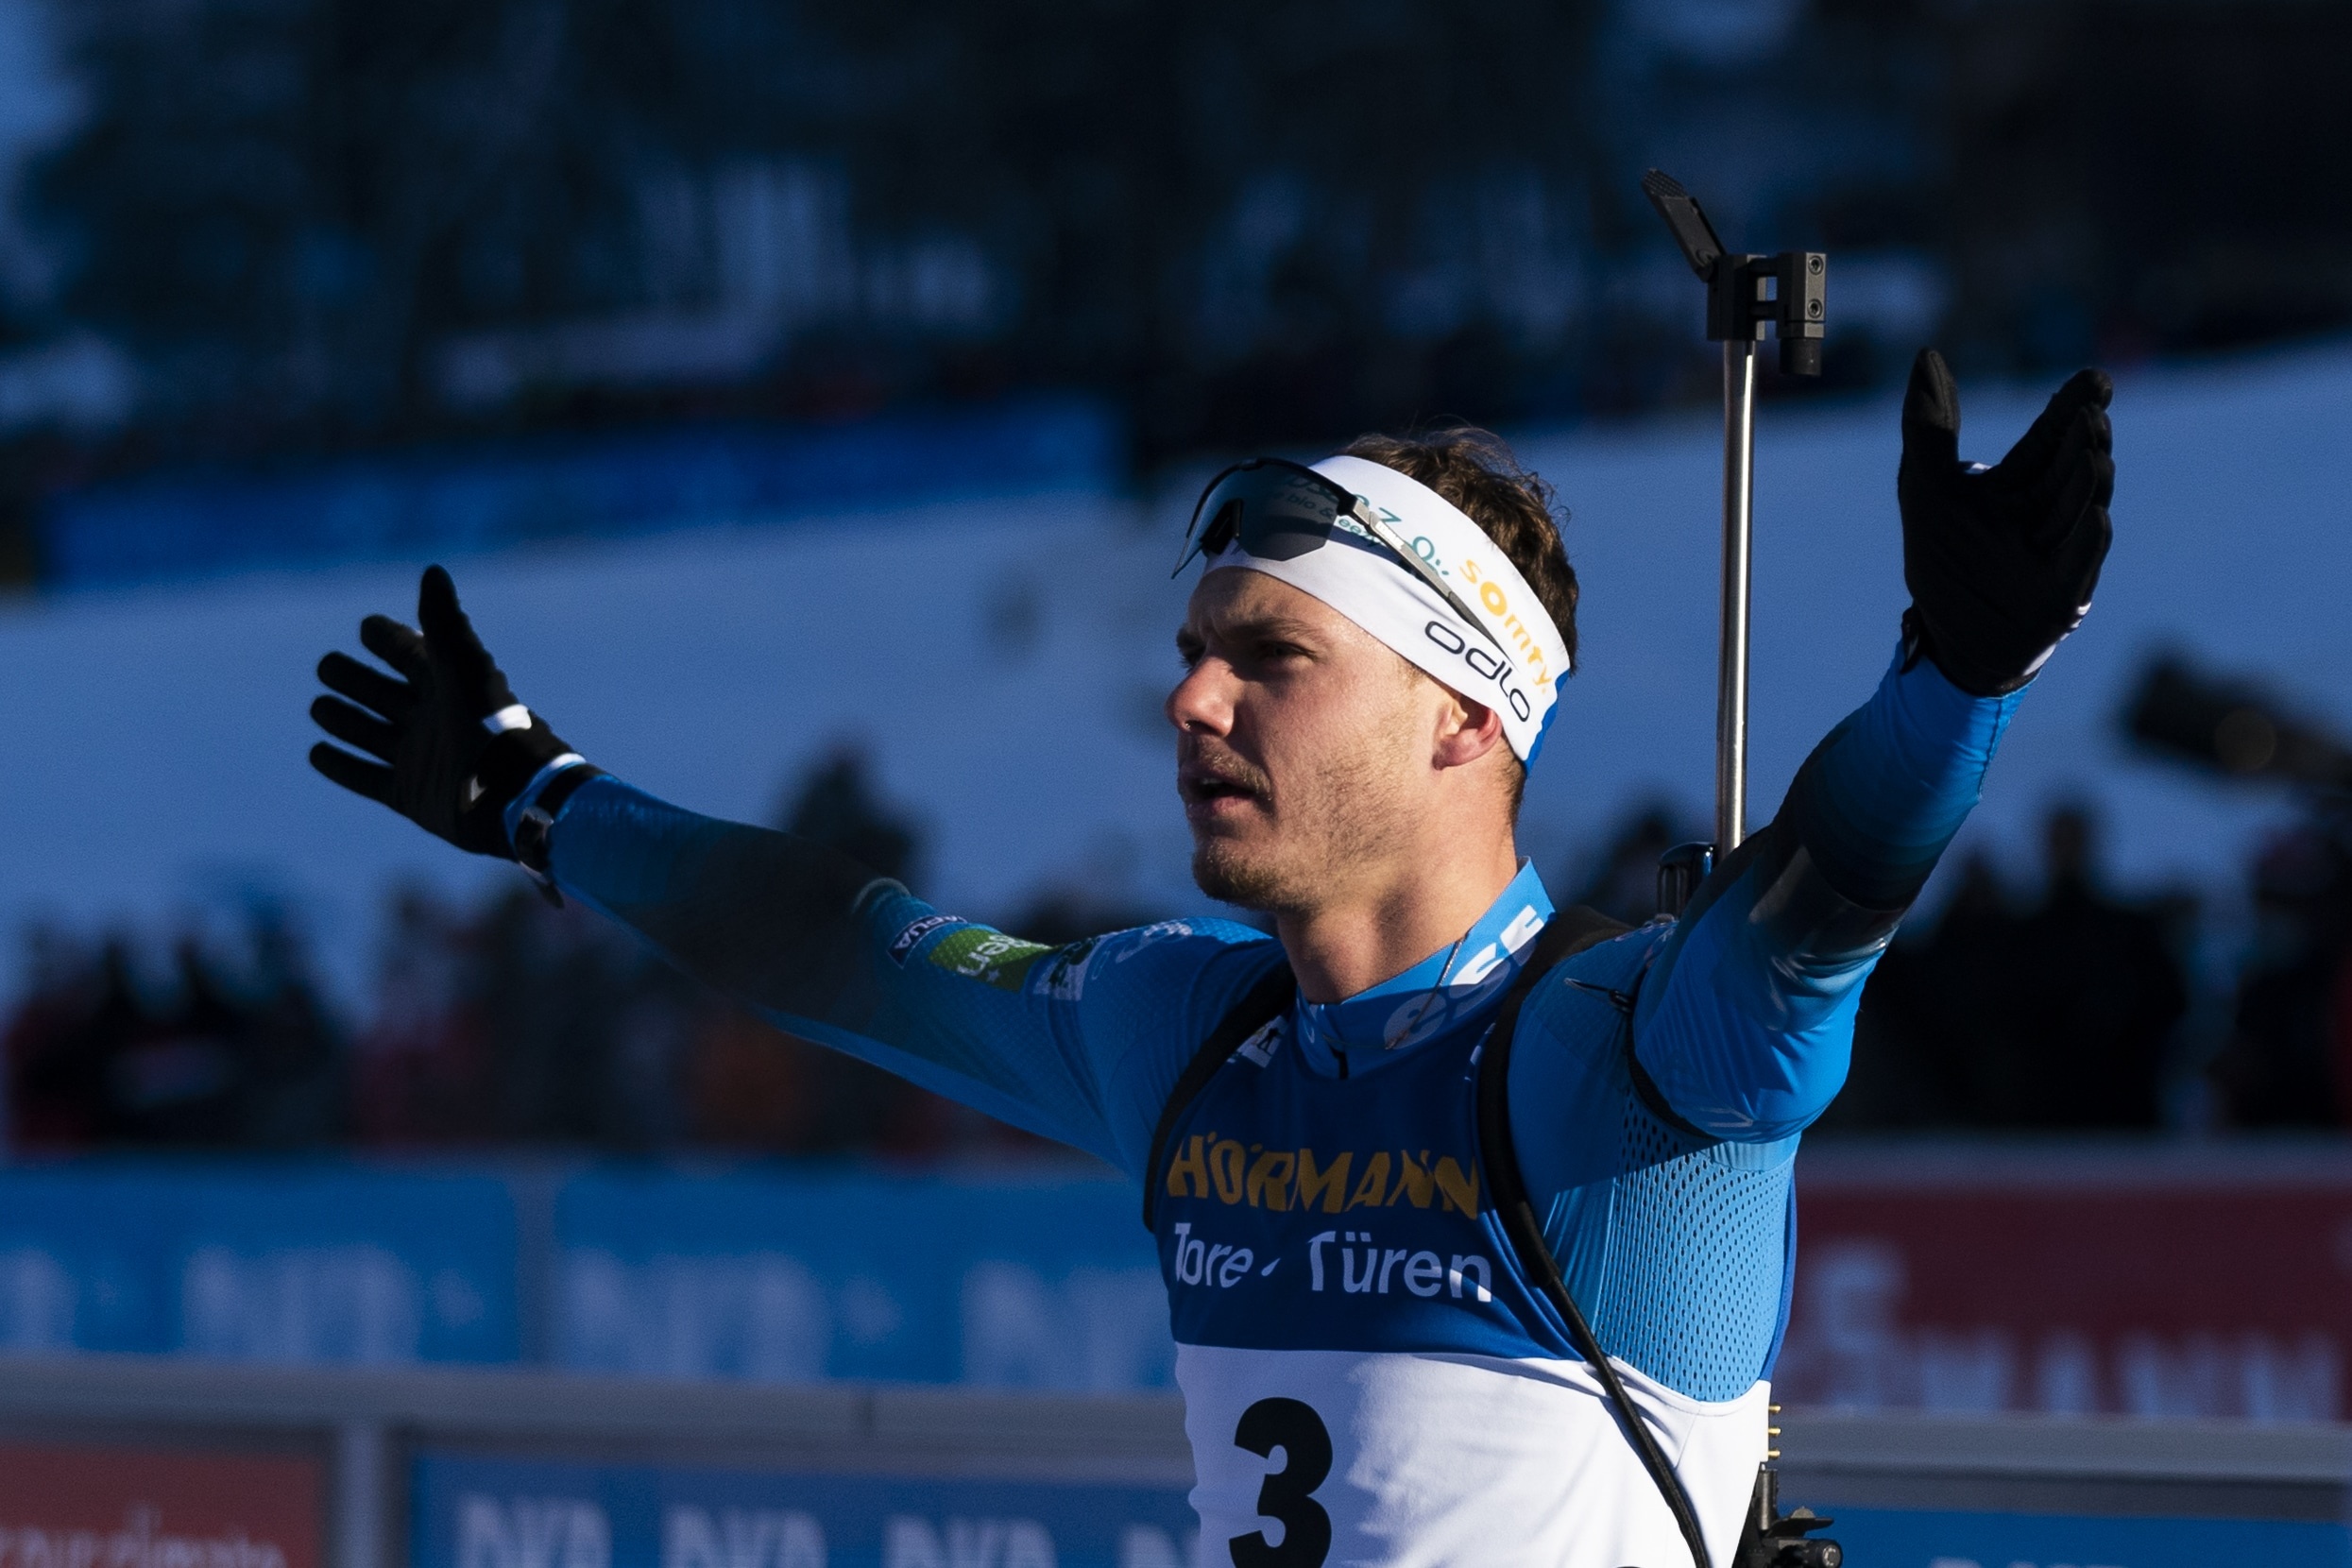 Emilien Jacquelin, Biathlon victory, Ski nordique, 2490x1660 HD Desktop